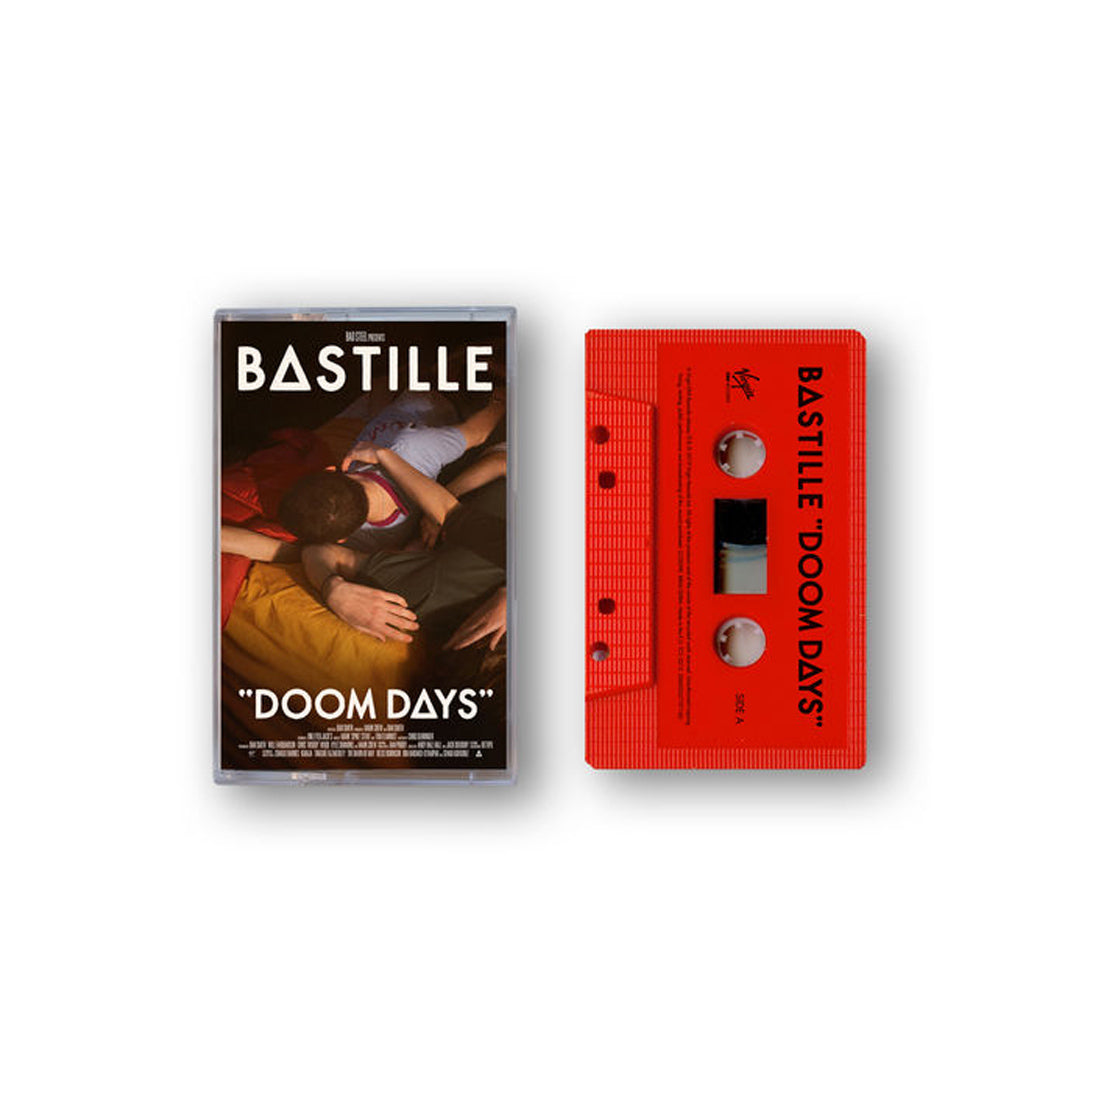 Bastille - Doom Days Limited Edition Cassette 